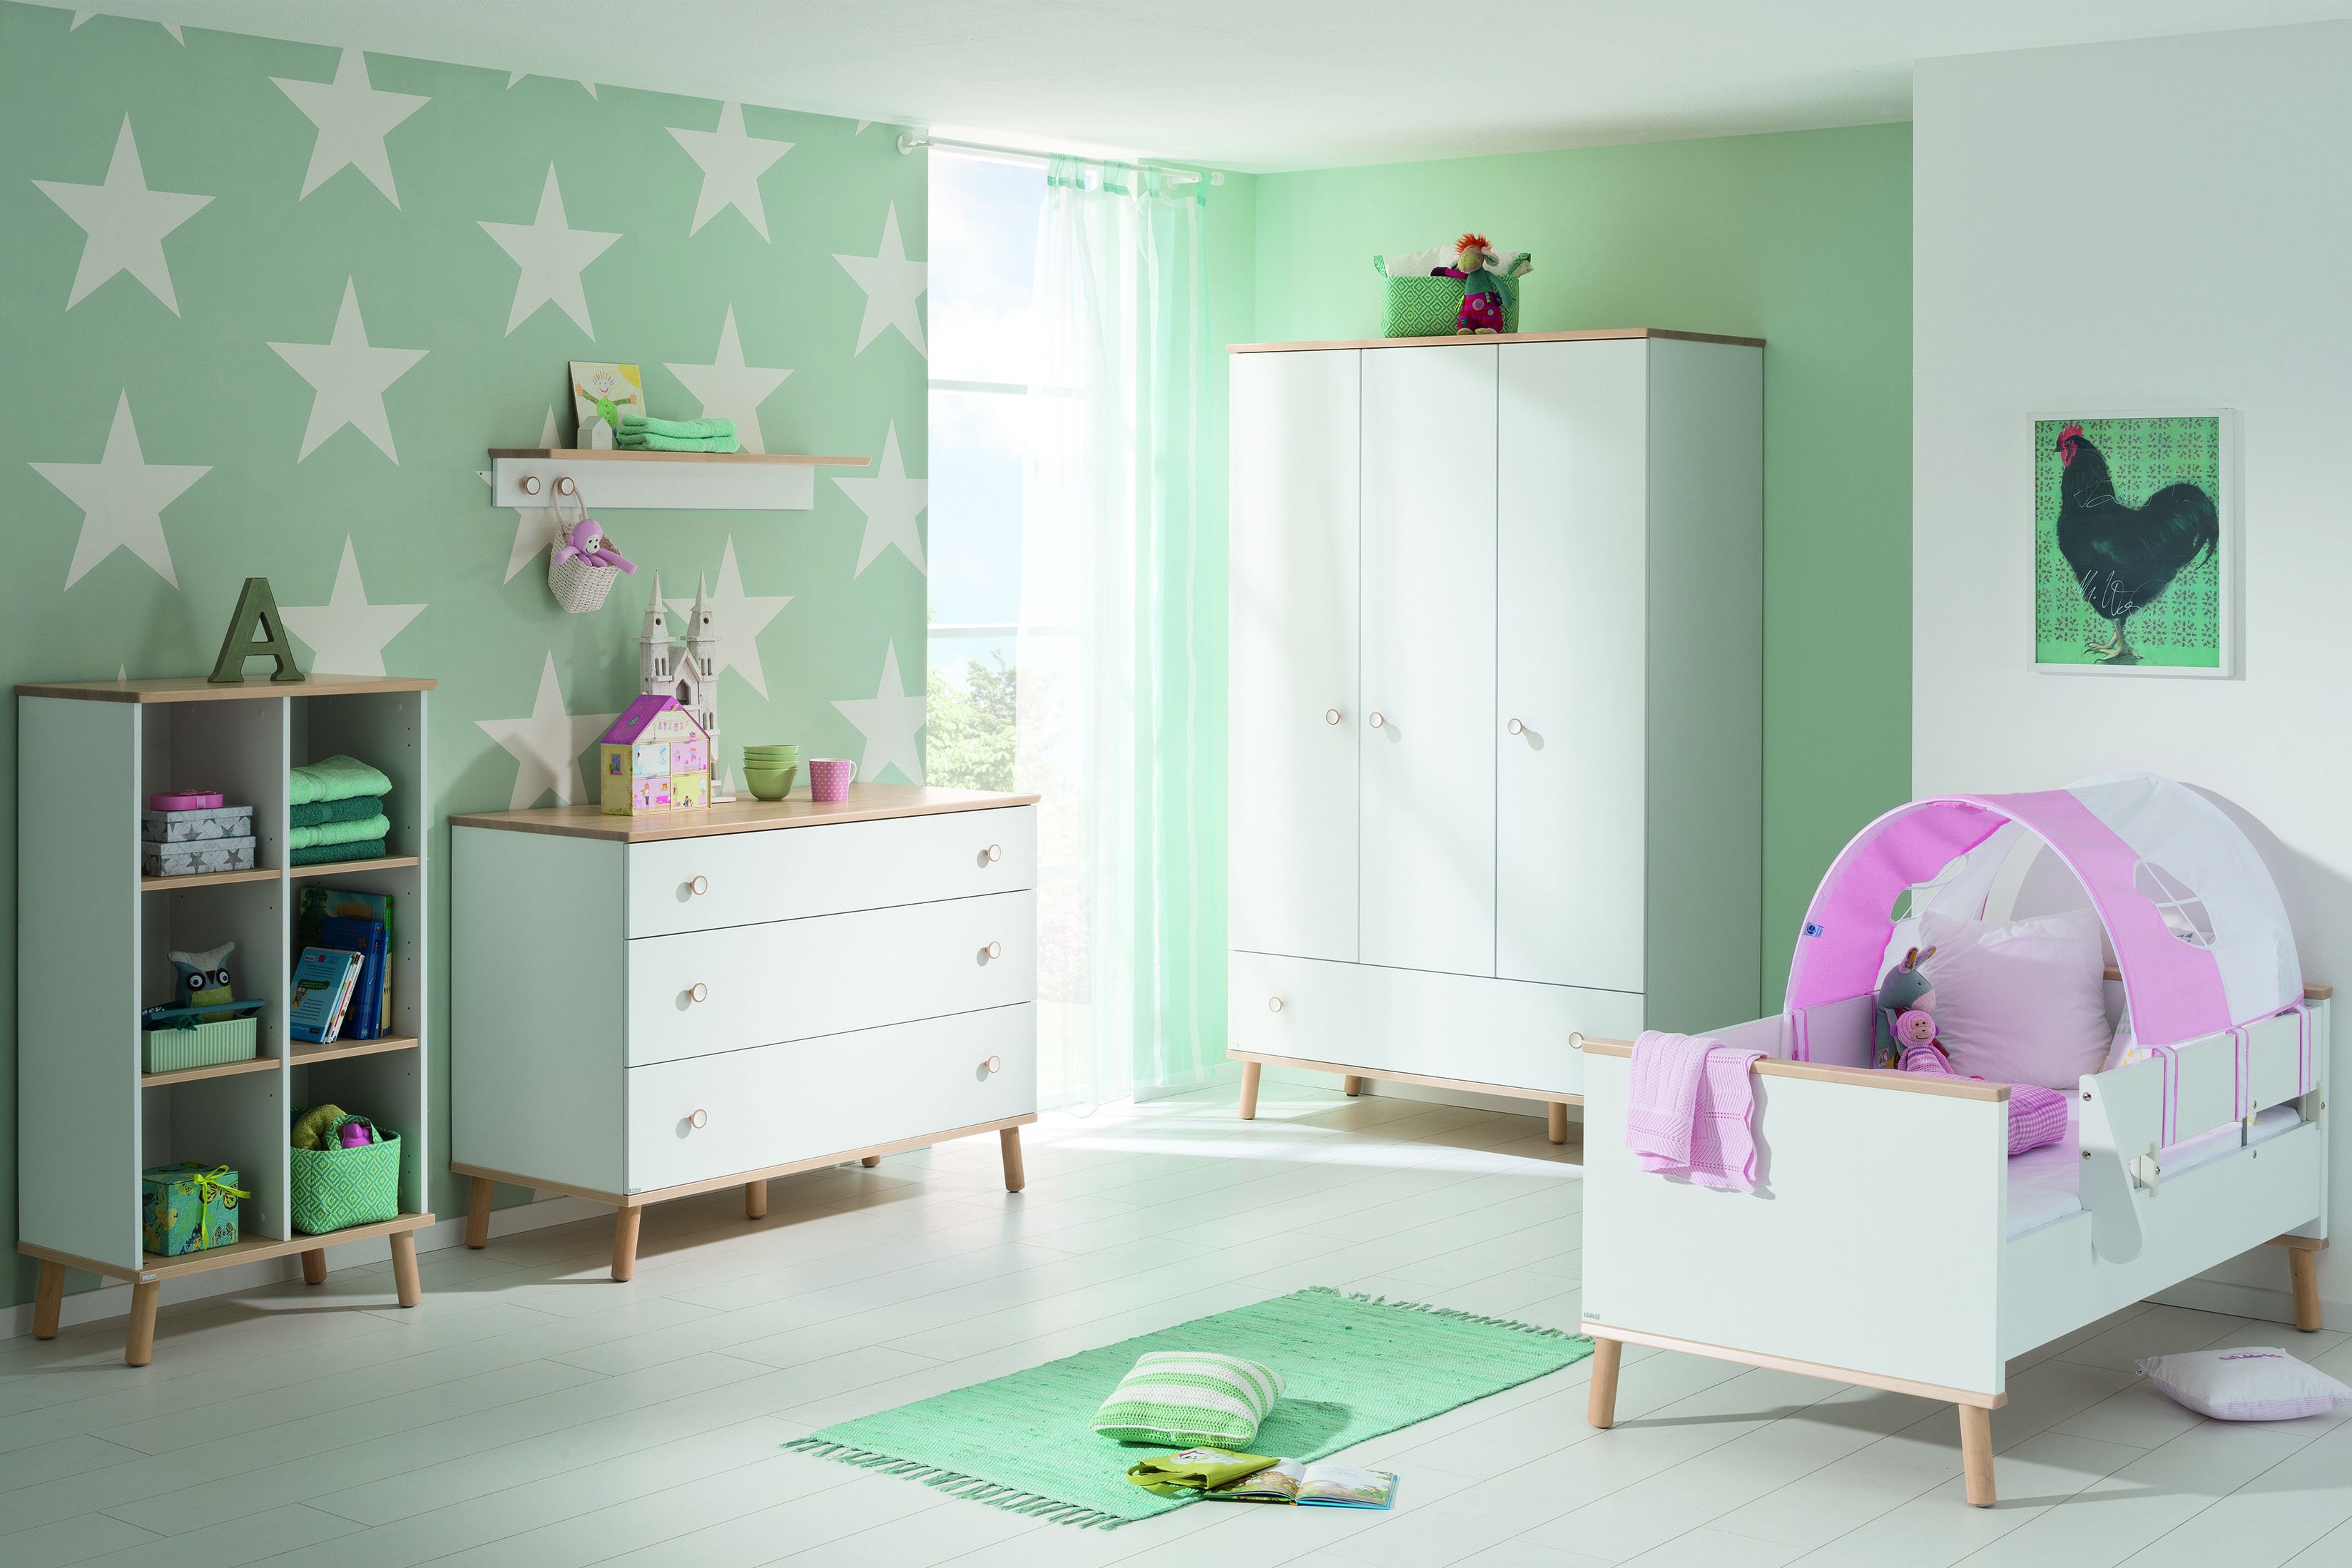 Дизайн детской комнаты для новорожденного: требования к материалам и помещению, как правильно оформить интерьер спальни, фото с примерами, как выбрать кроватку?